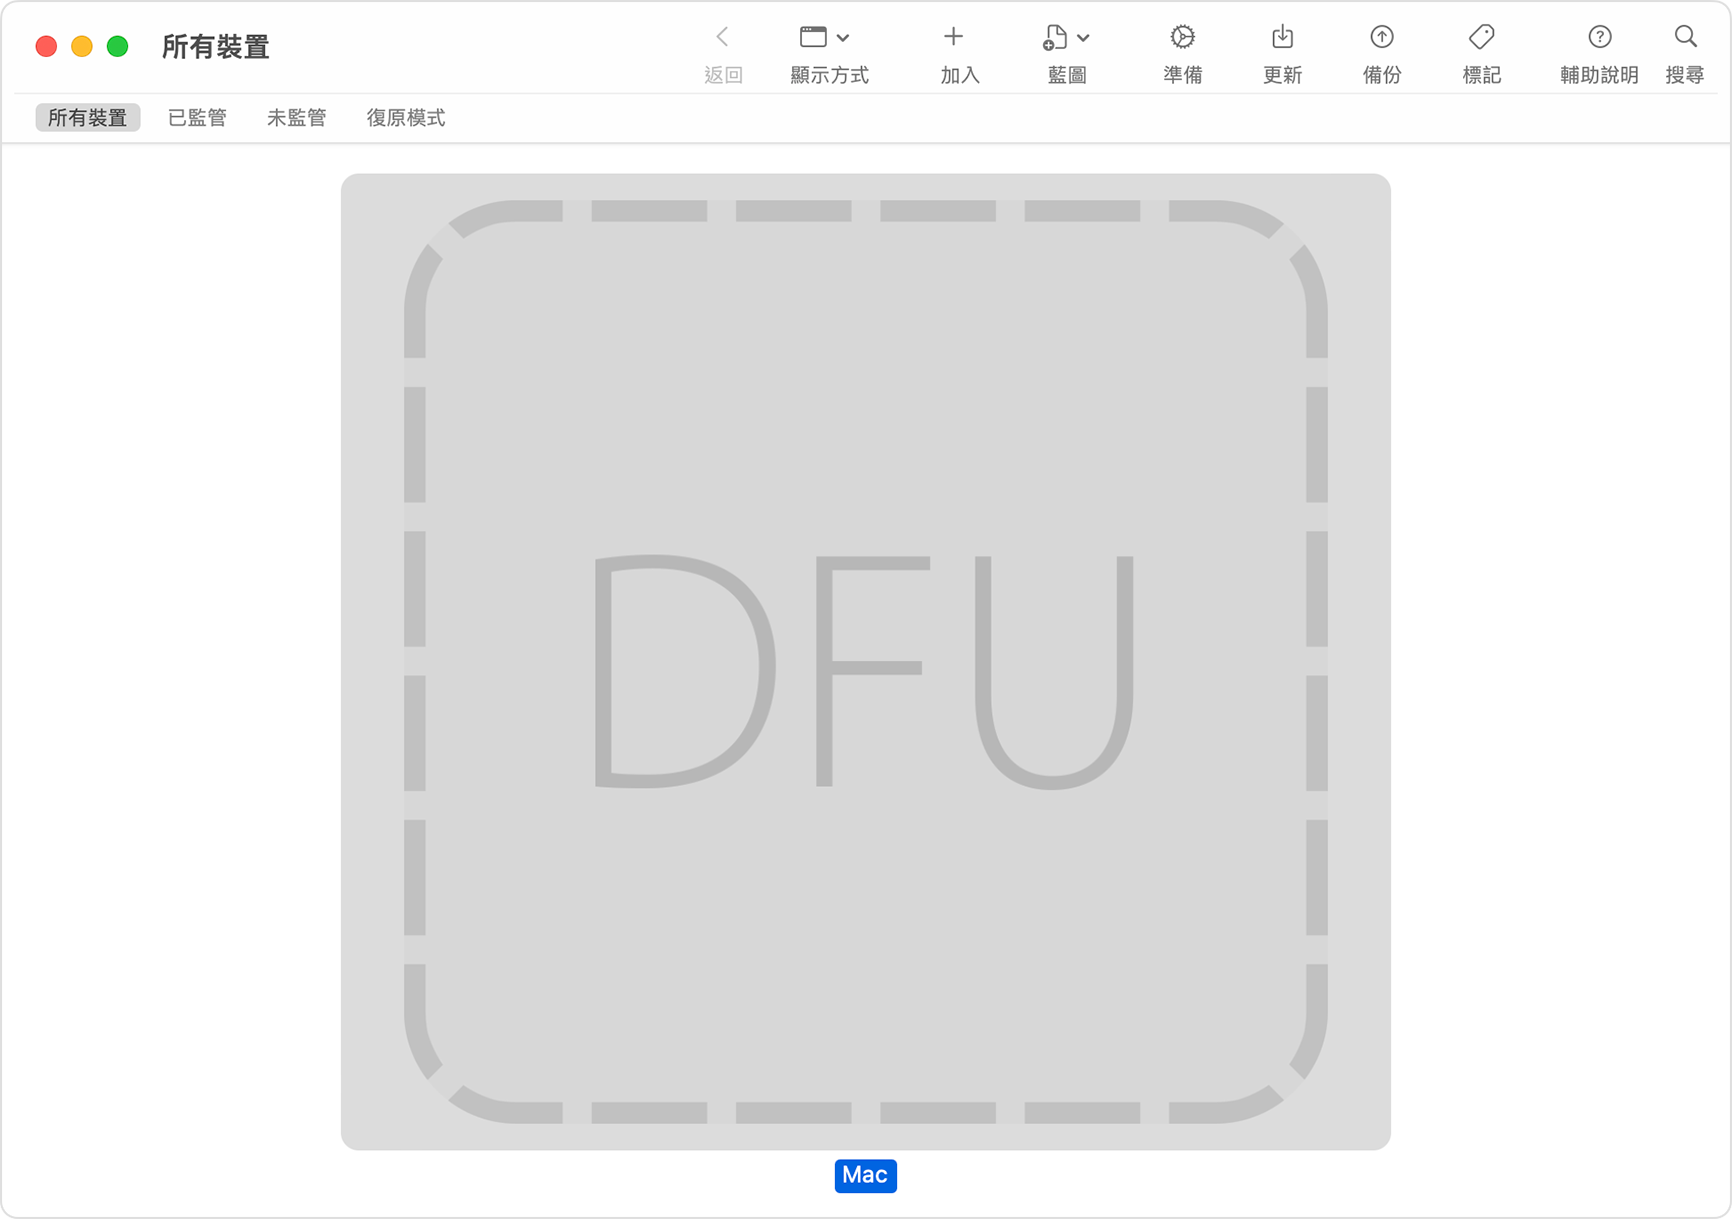 Apple Configurator 視窗顯示已為受影響的 Mac 選取「DFU」